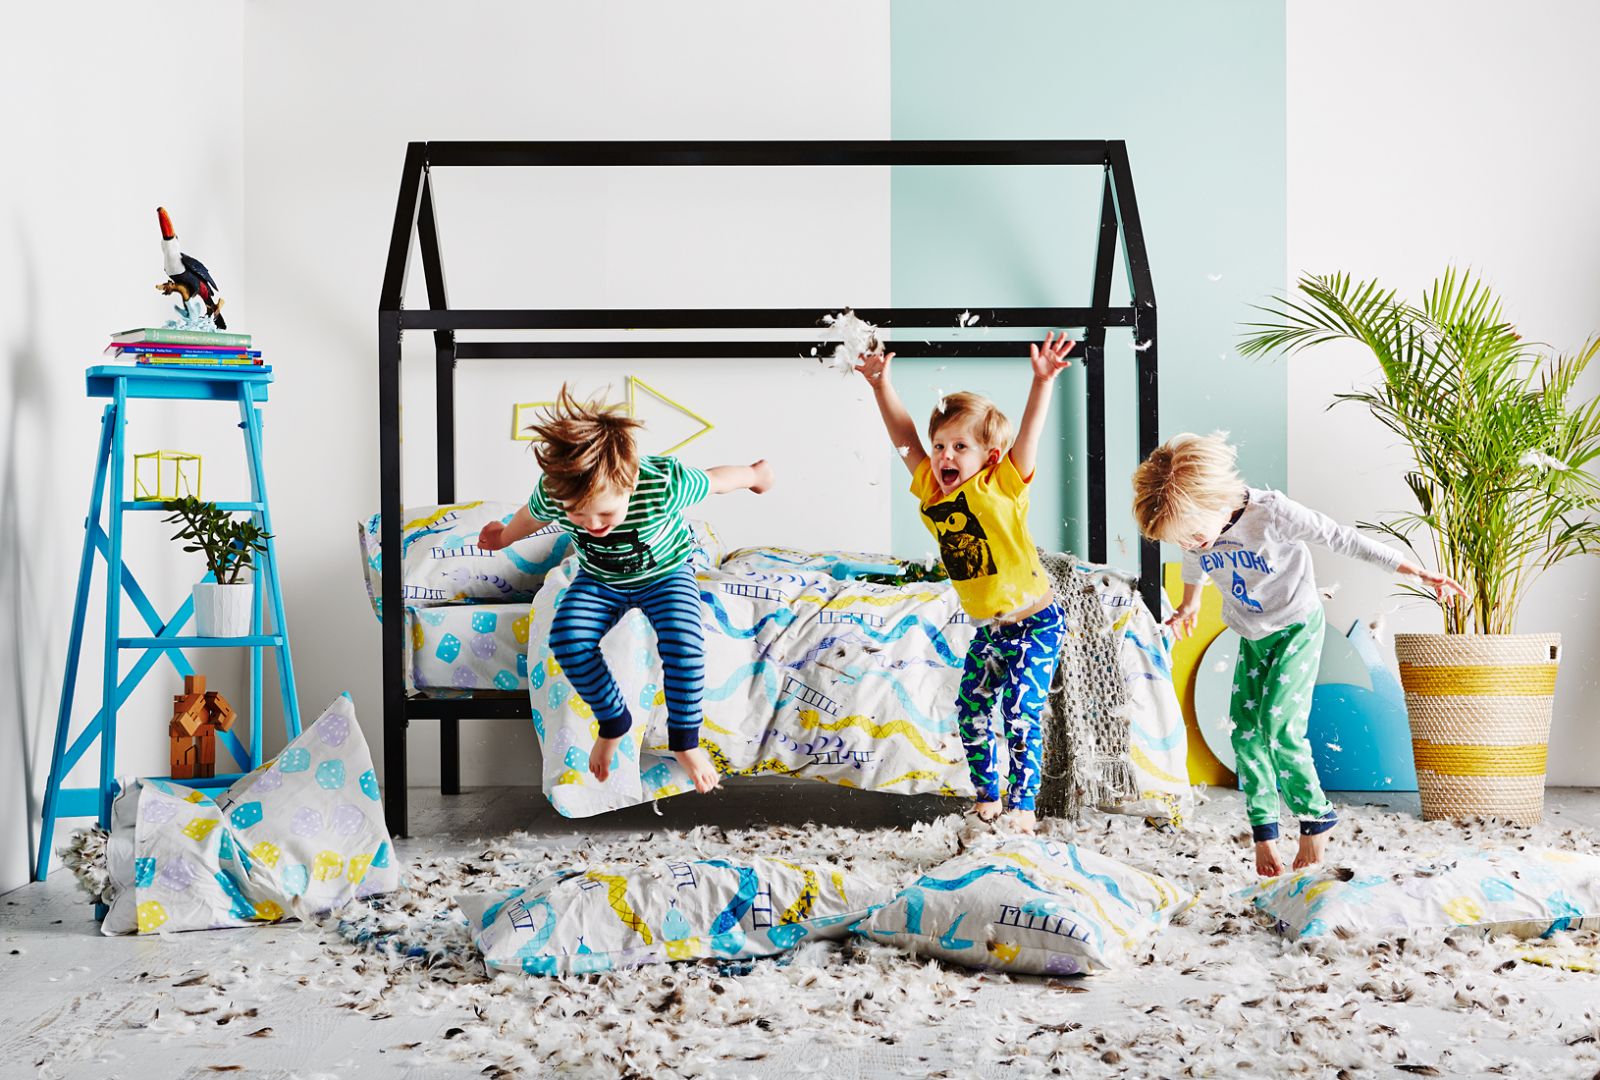 Łóżko domek to wspaniała przestrzeń do spania i zabawy. Można udekorować je baldachimem. Fot. Indie Art & Design